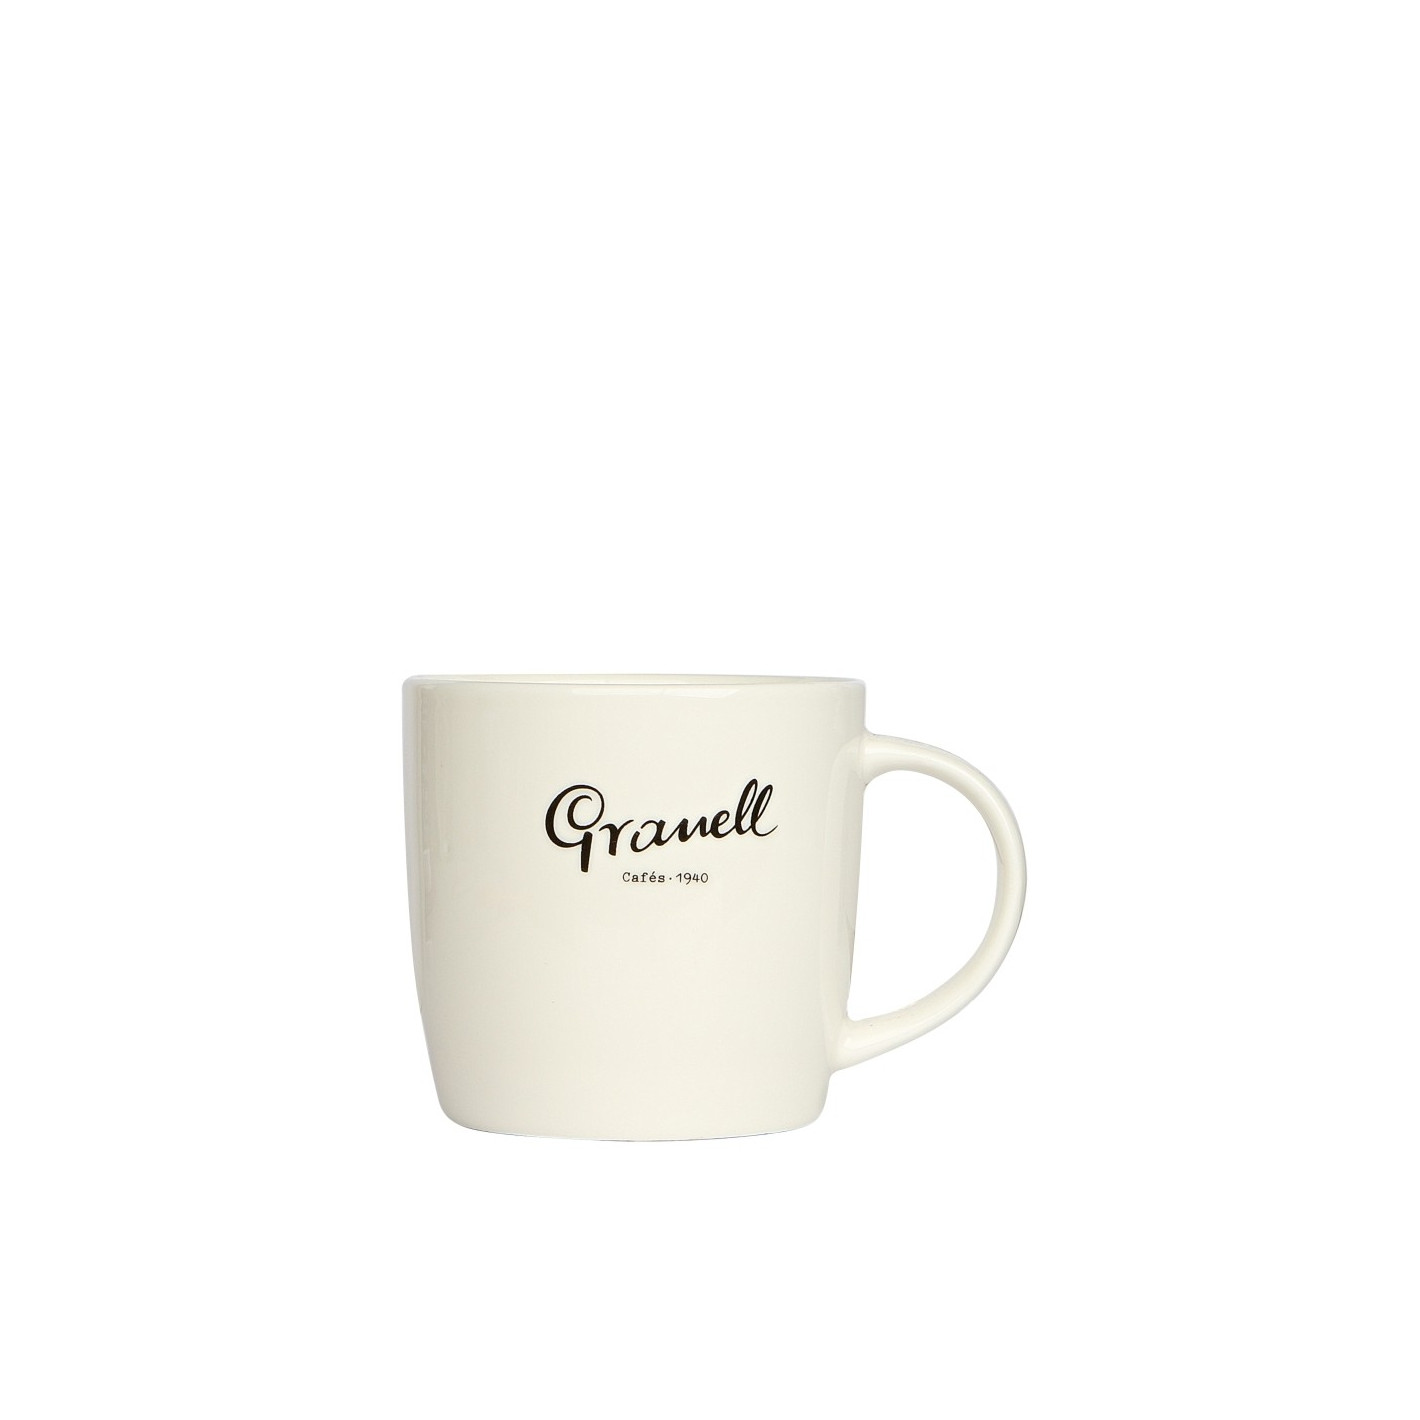 Tazas espresso Granell